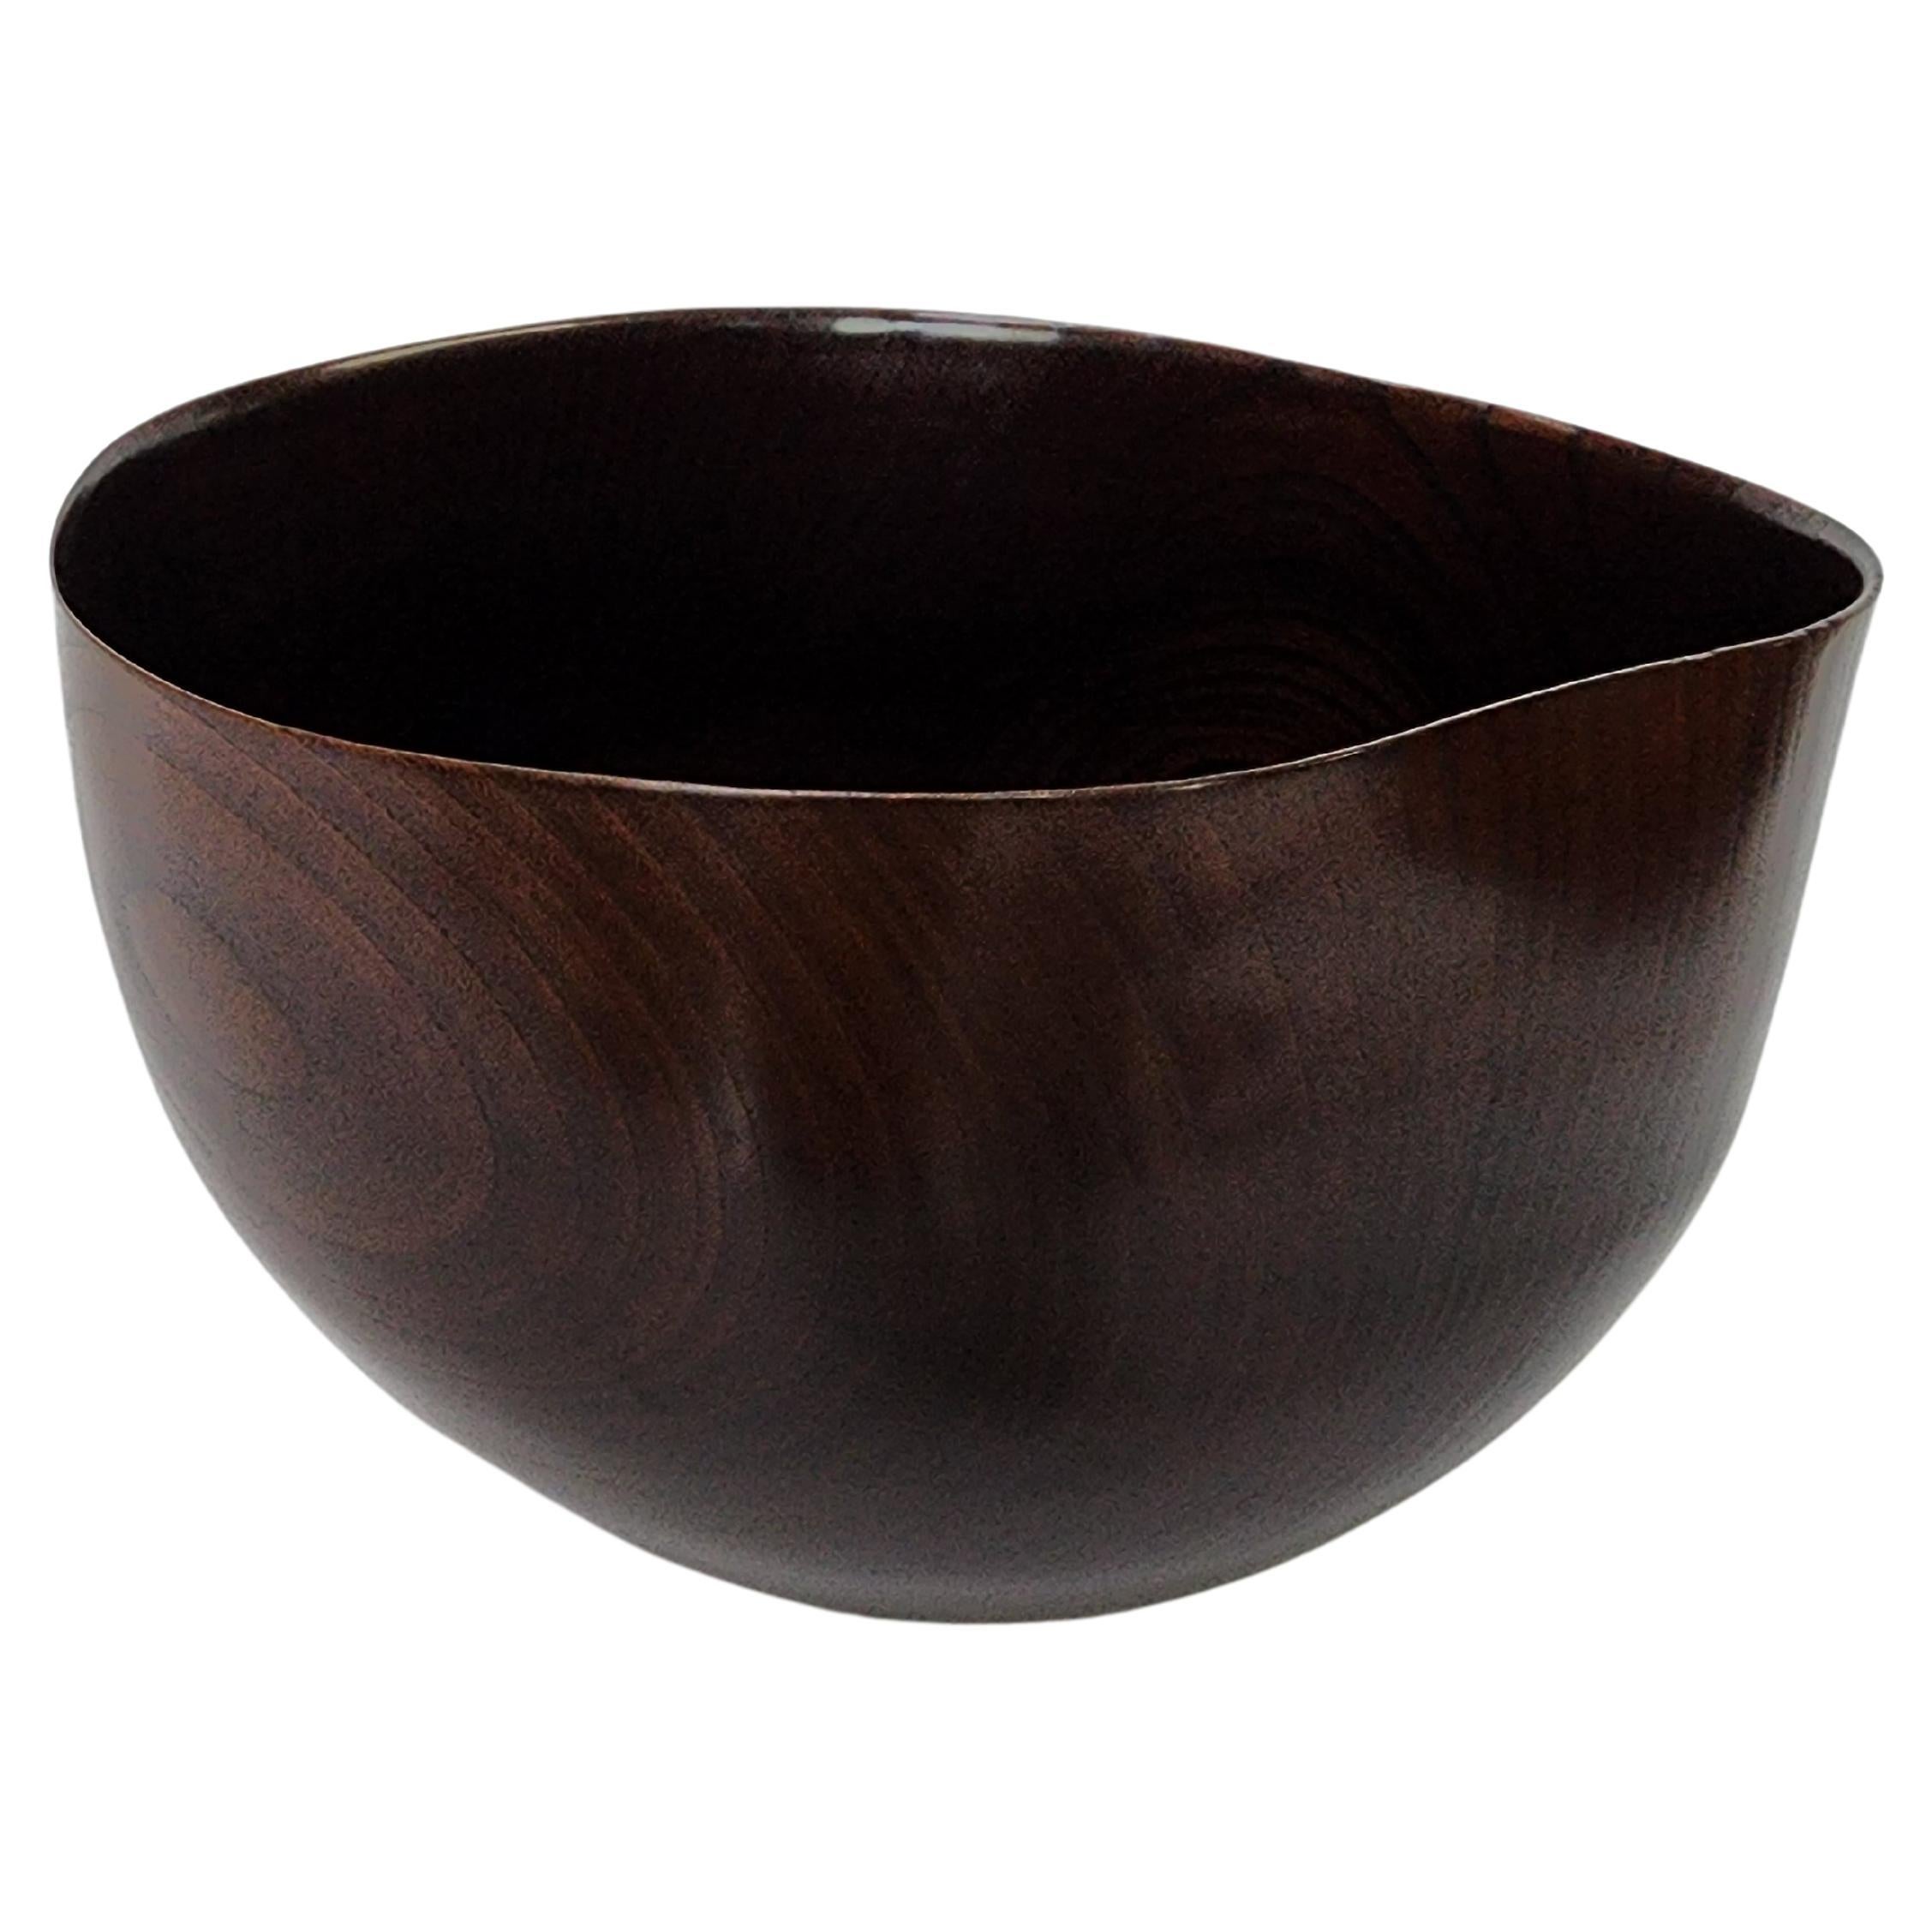 Contemporary For 02 bowl by Sukkeun Kang For Sale